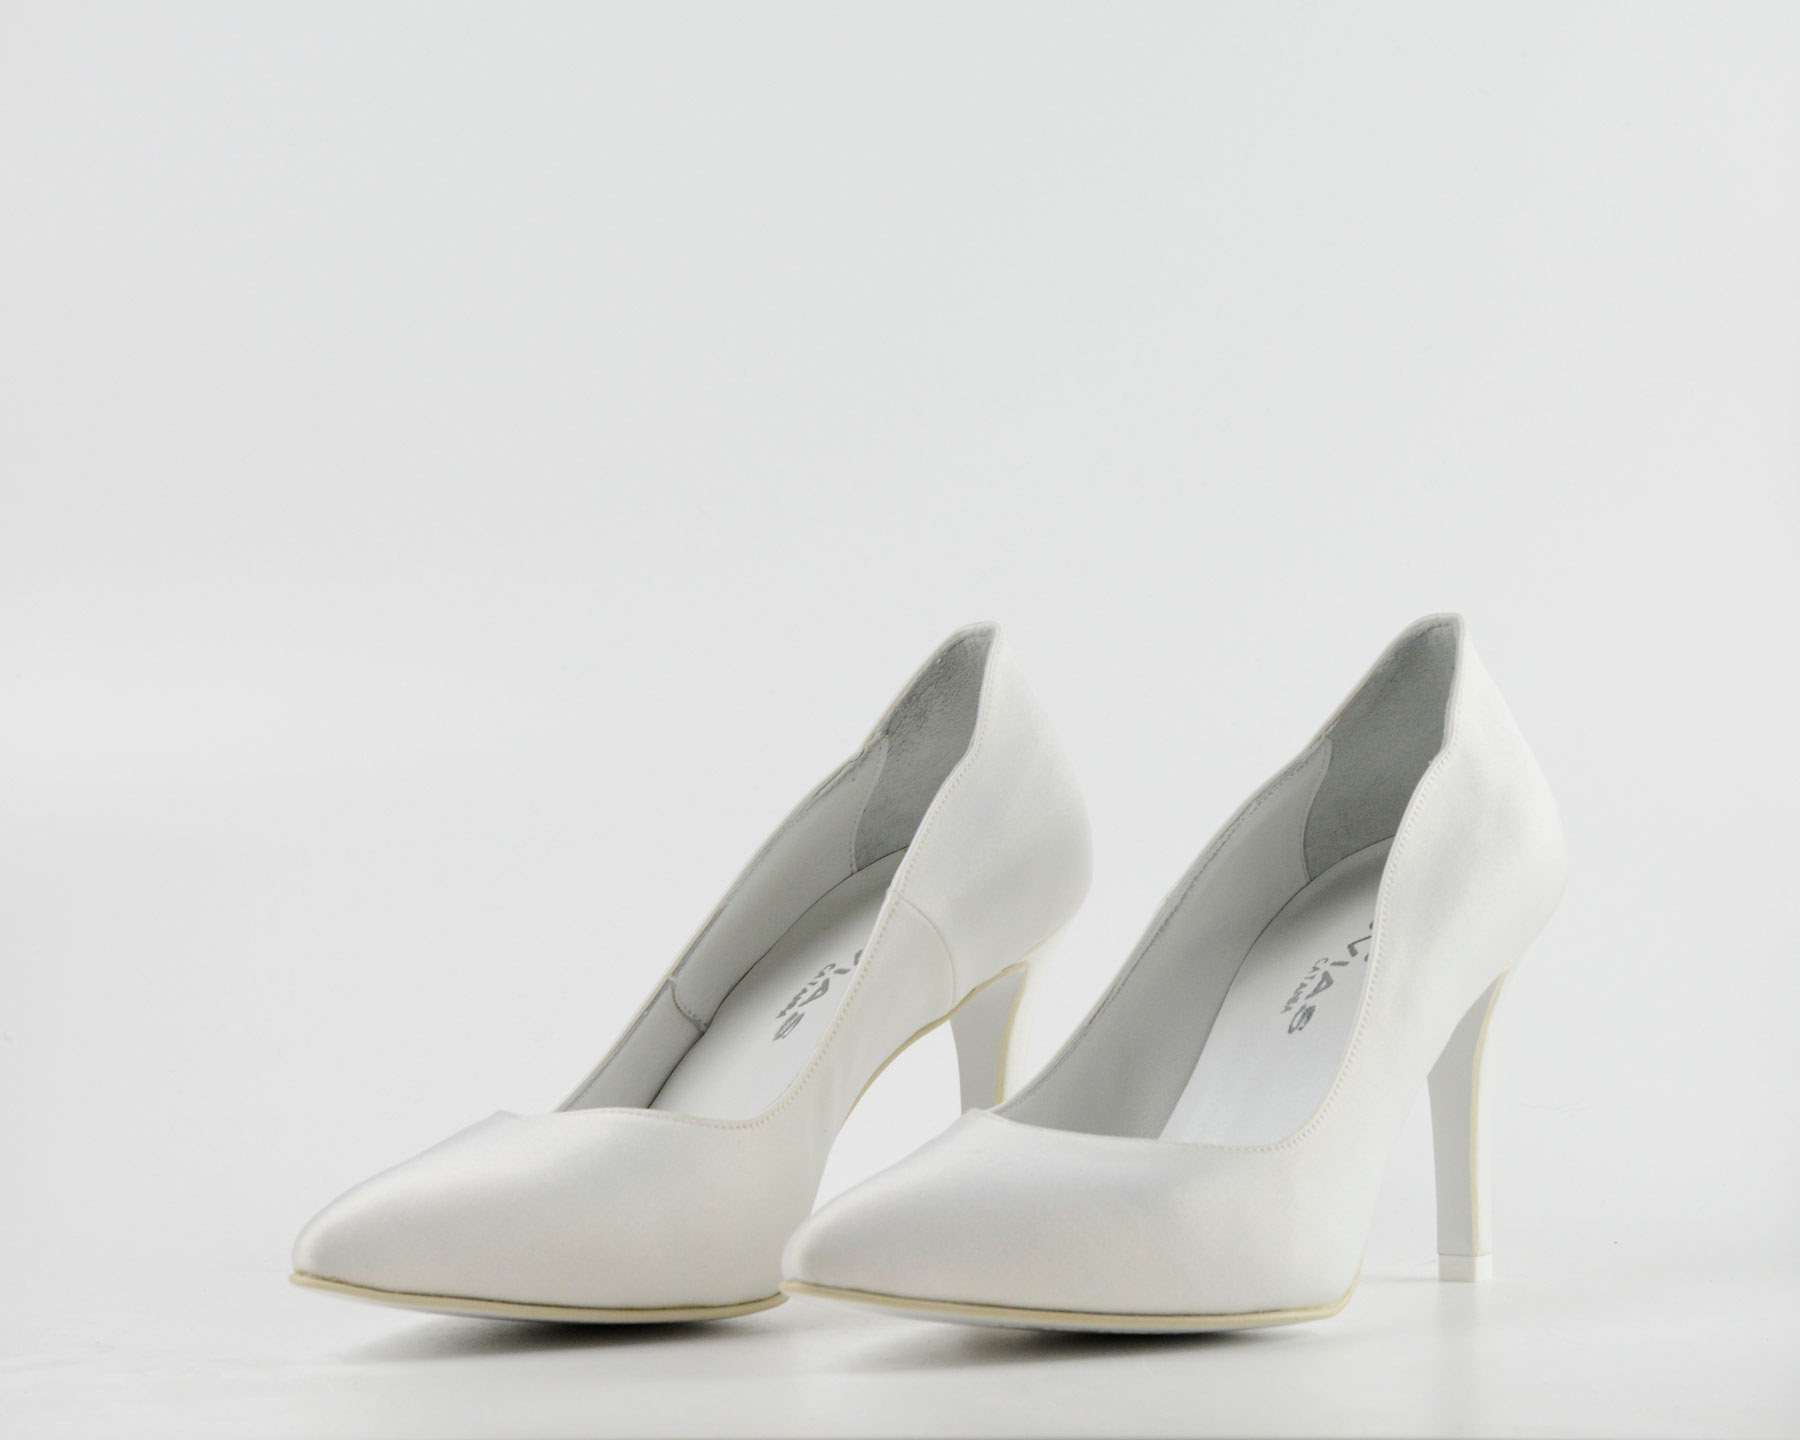 Le scarpe da sposa sono l'accessorio più importante per ogni cerimonia. Scarpe Sposa Novias Abiti Da Sposi E Cerimonie A Catania